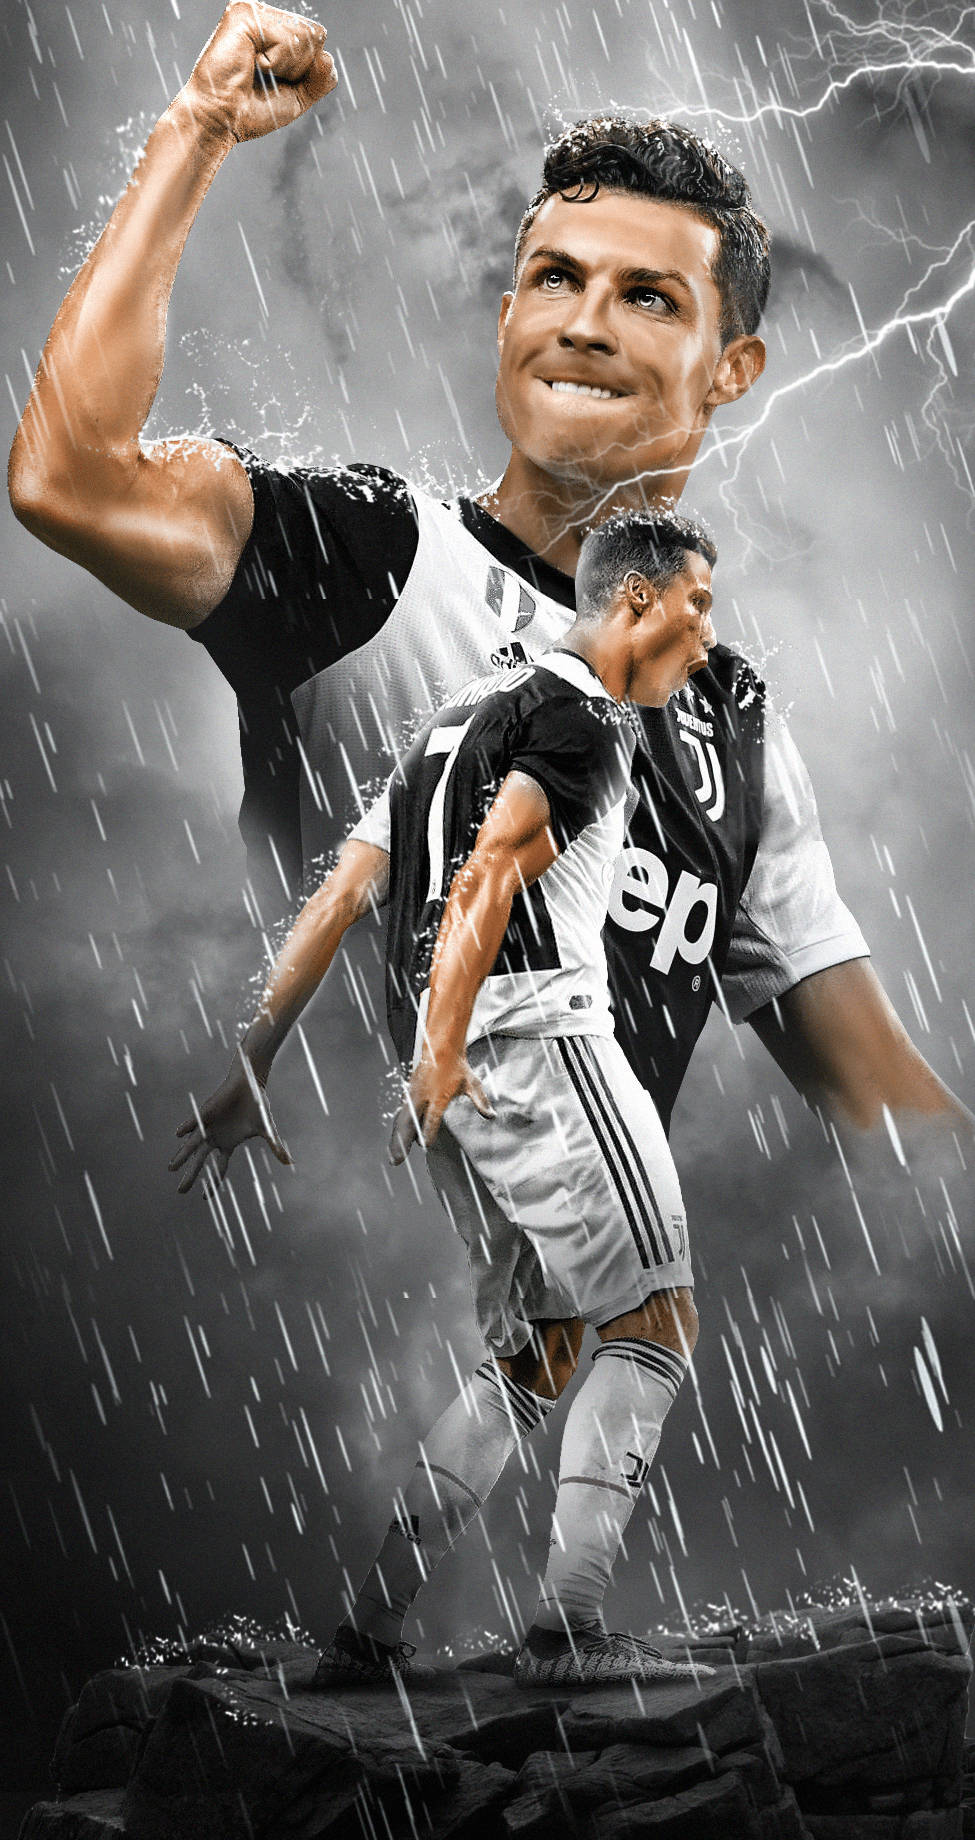 Ronaldo iPhone Wallpapers -Top 25 Best Ronaldo iPhone Wallpapers